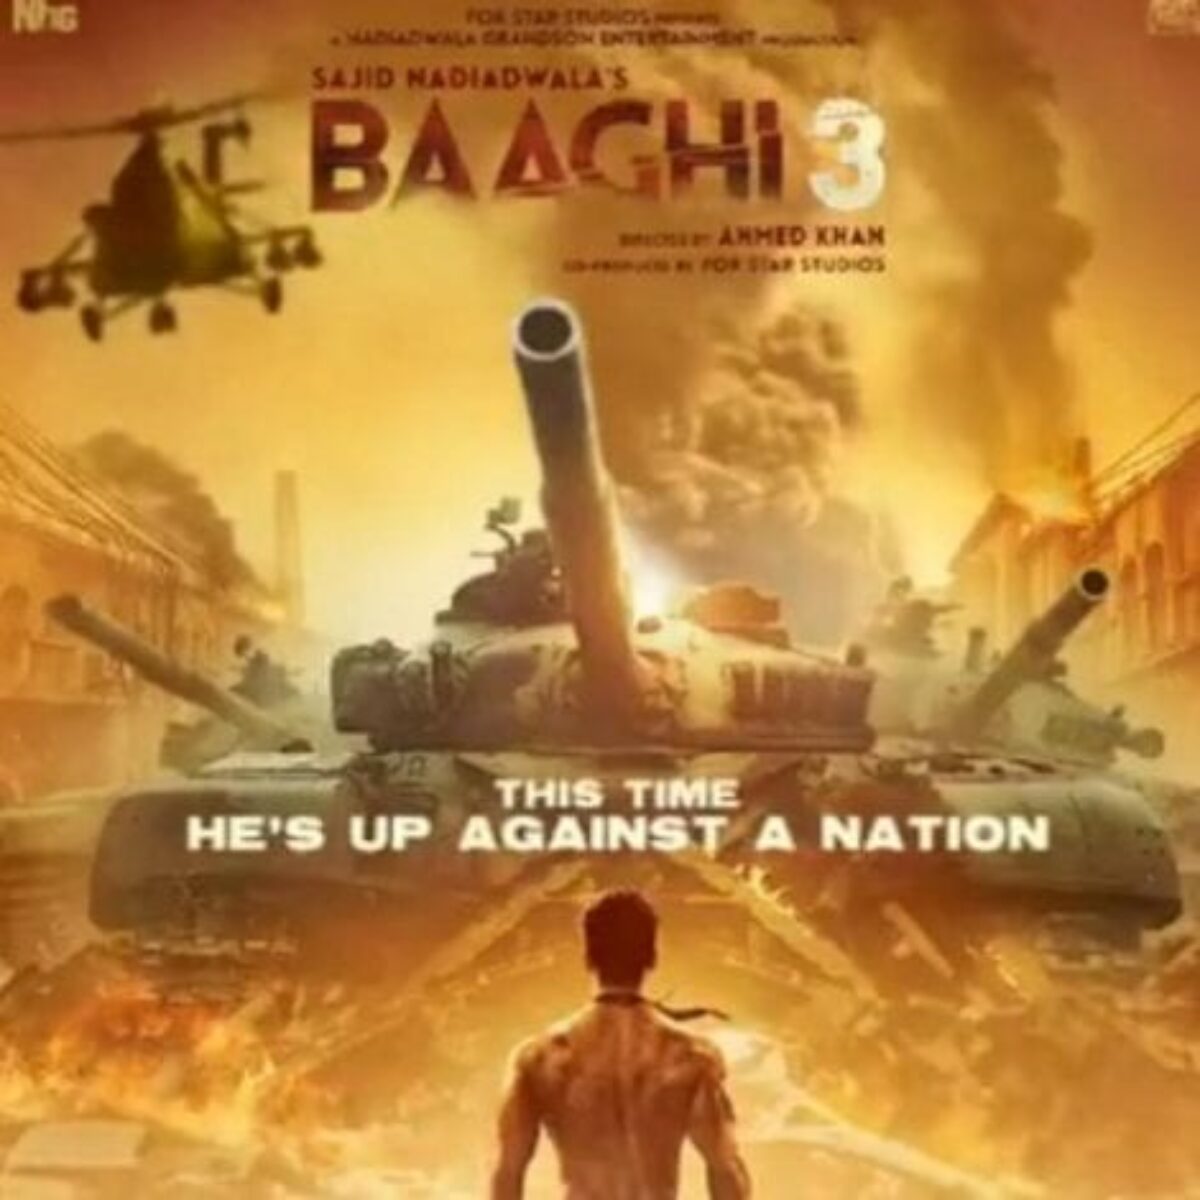 Baaghi Movie Download Karni Hai